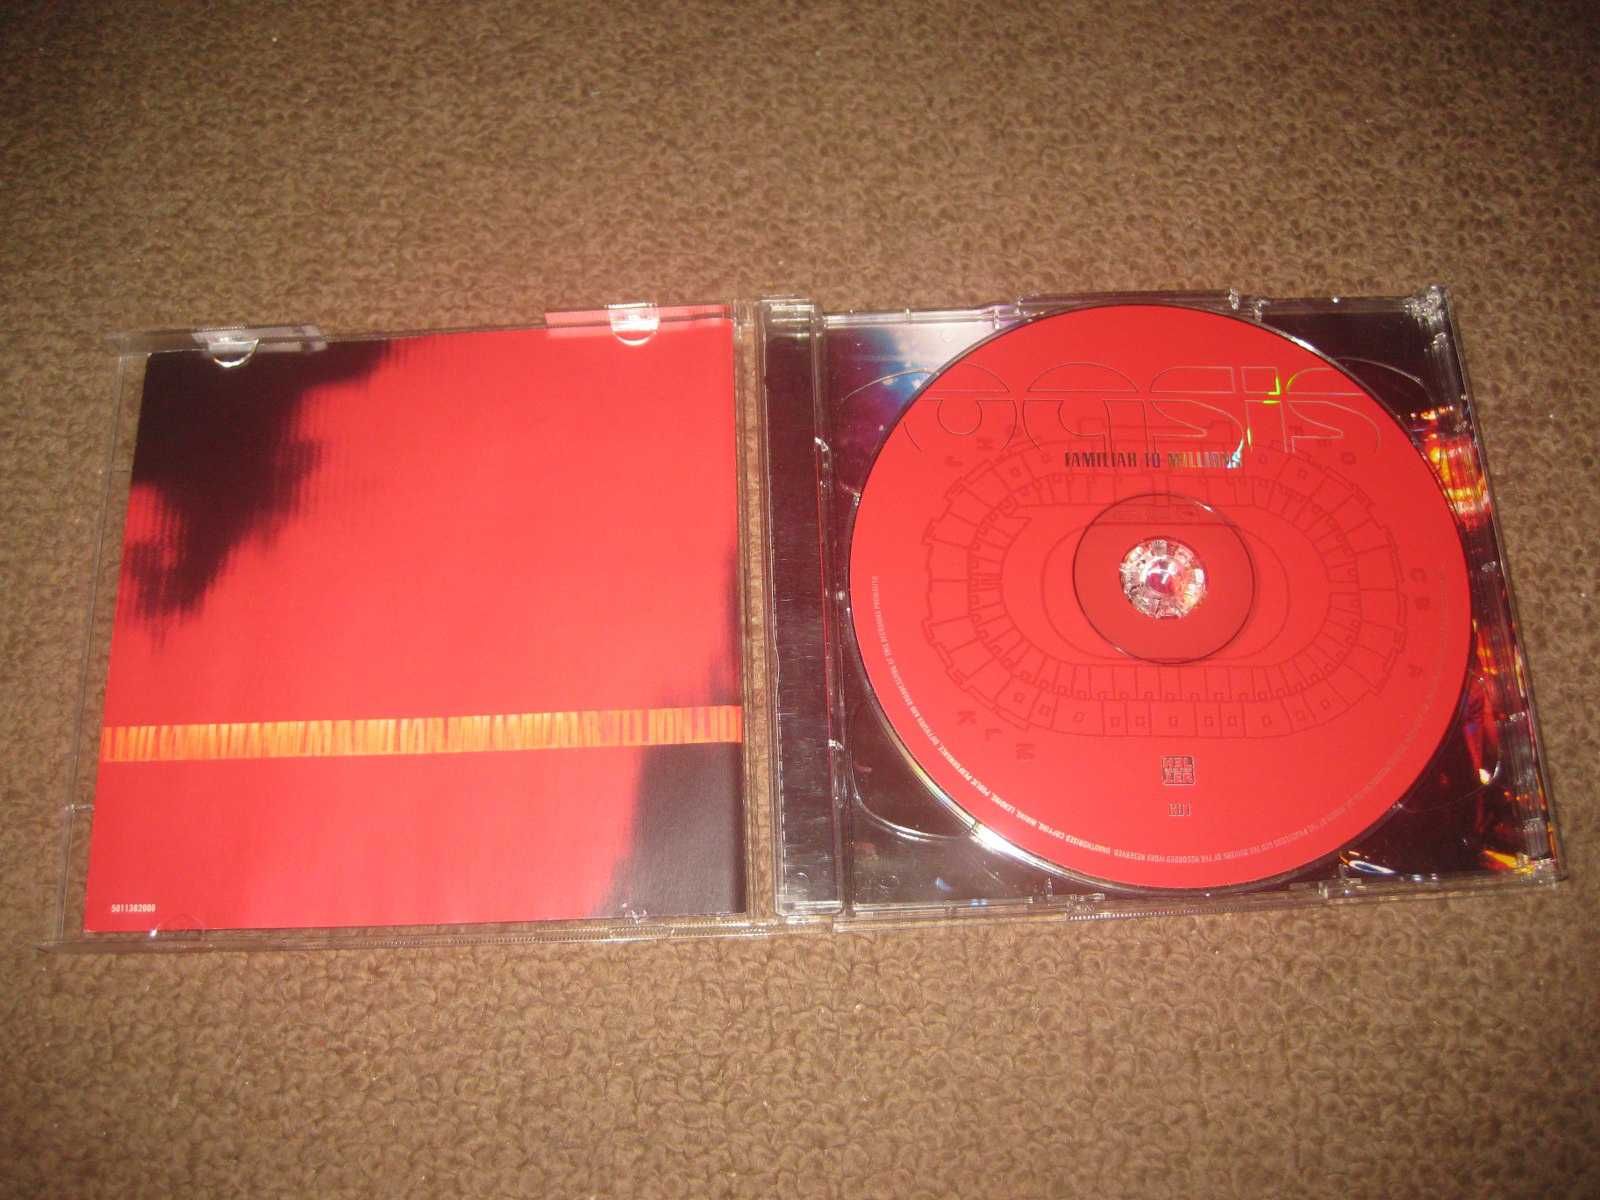 4 CDs dos "Oasis" Portes Grátis!